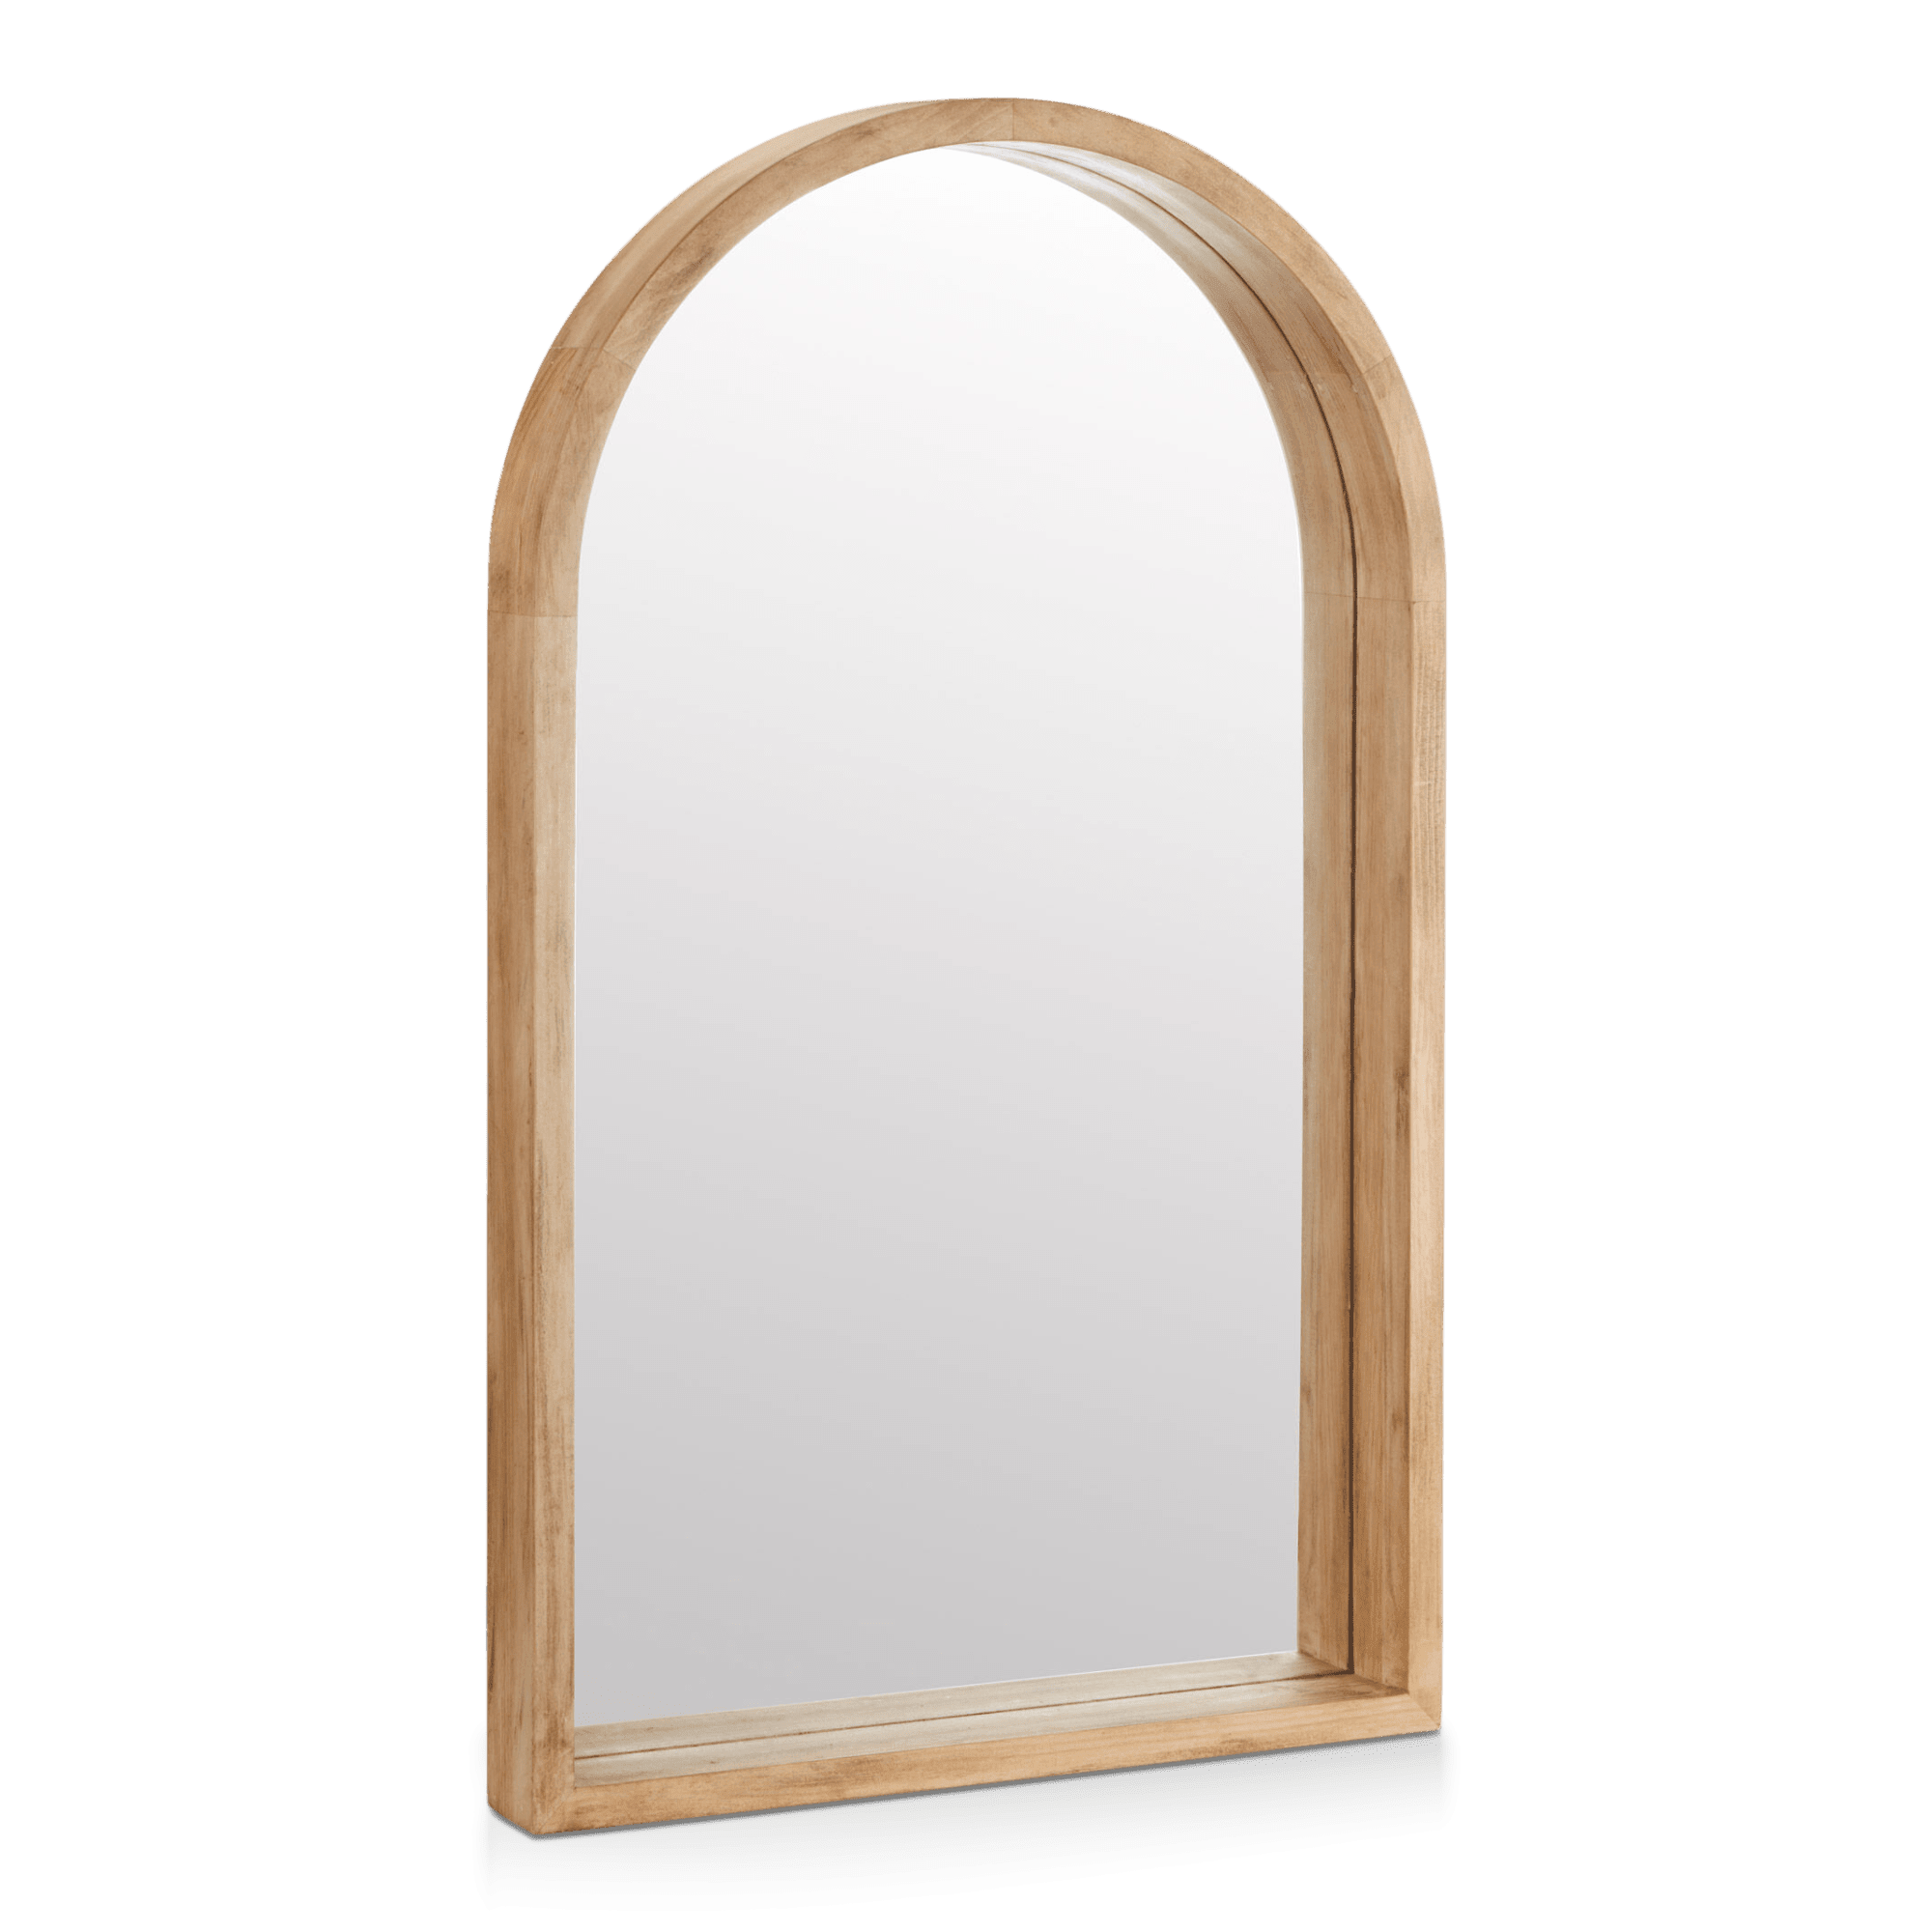 Arched Barn Wood Mirror